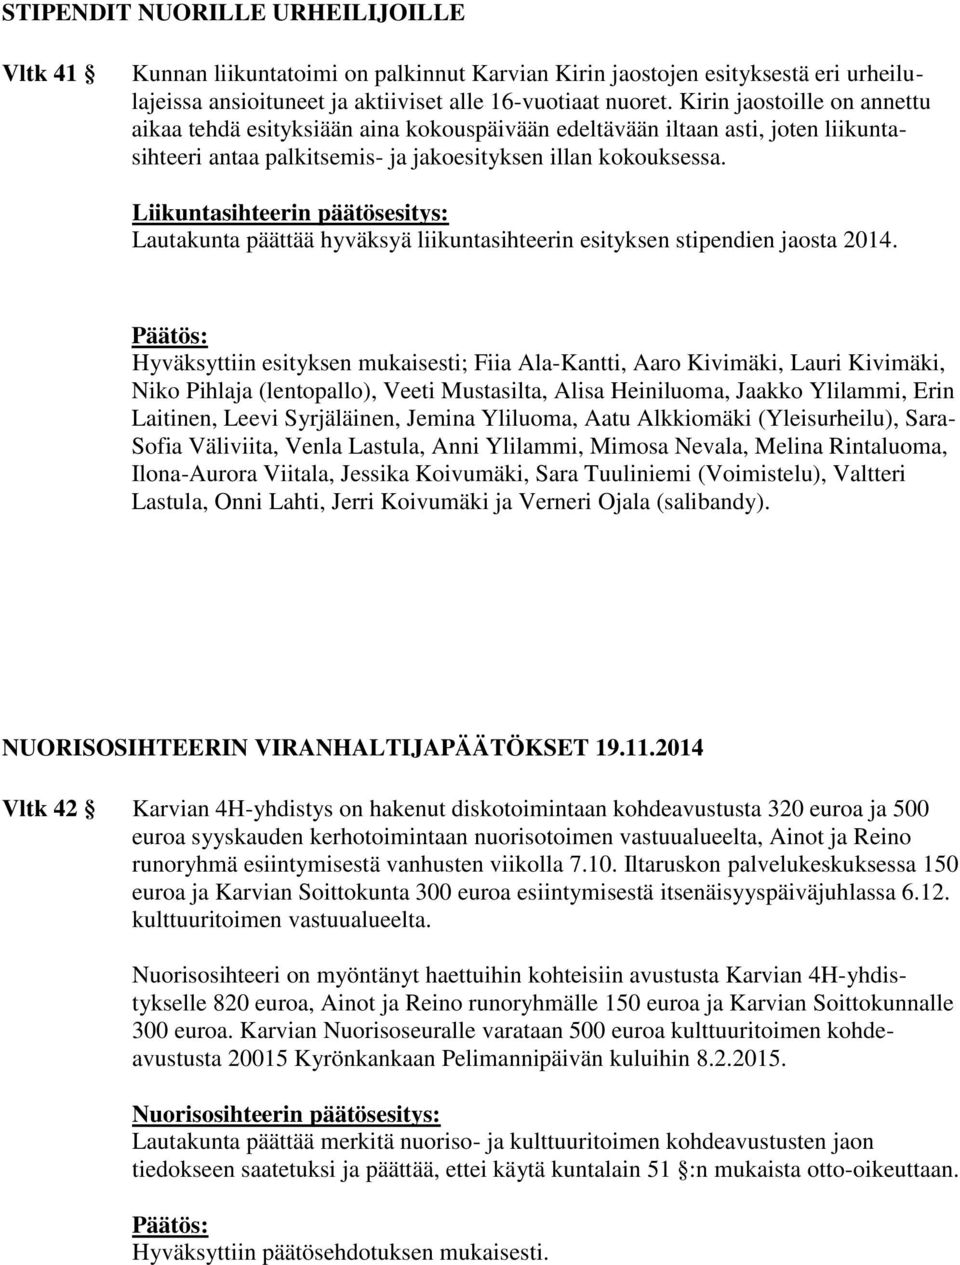 Liikuntasihteerin päätösesitys: Lautakunta päättää hyväksyä liikuntasihteerin esityksen stipendien jaosta 2014.